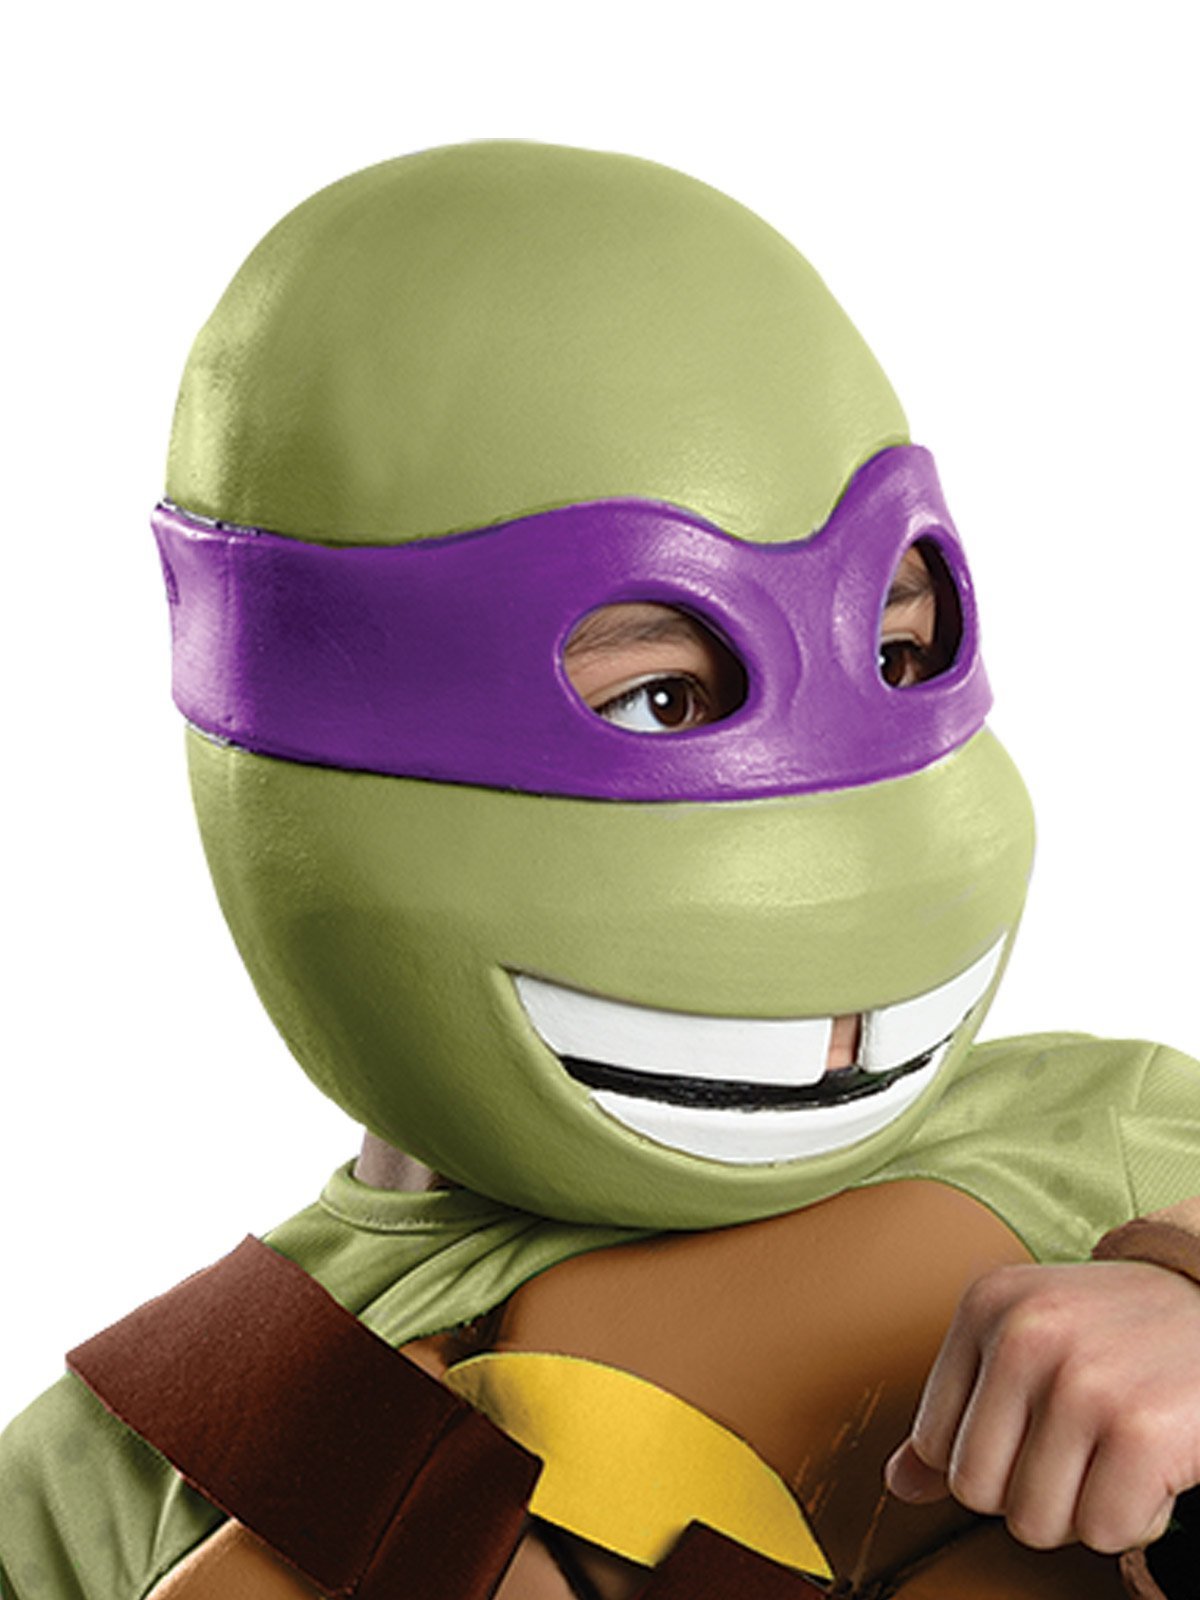 Donatello Deluxe Costume for Kids - Nickelodeon Teenage Mutant Ninja T